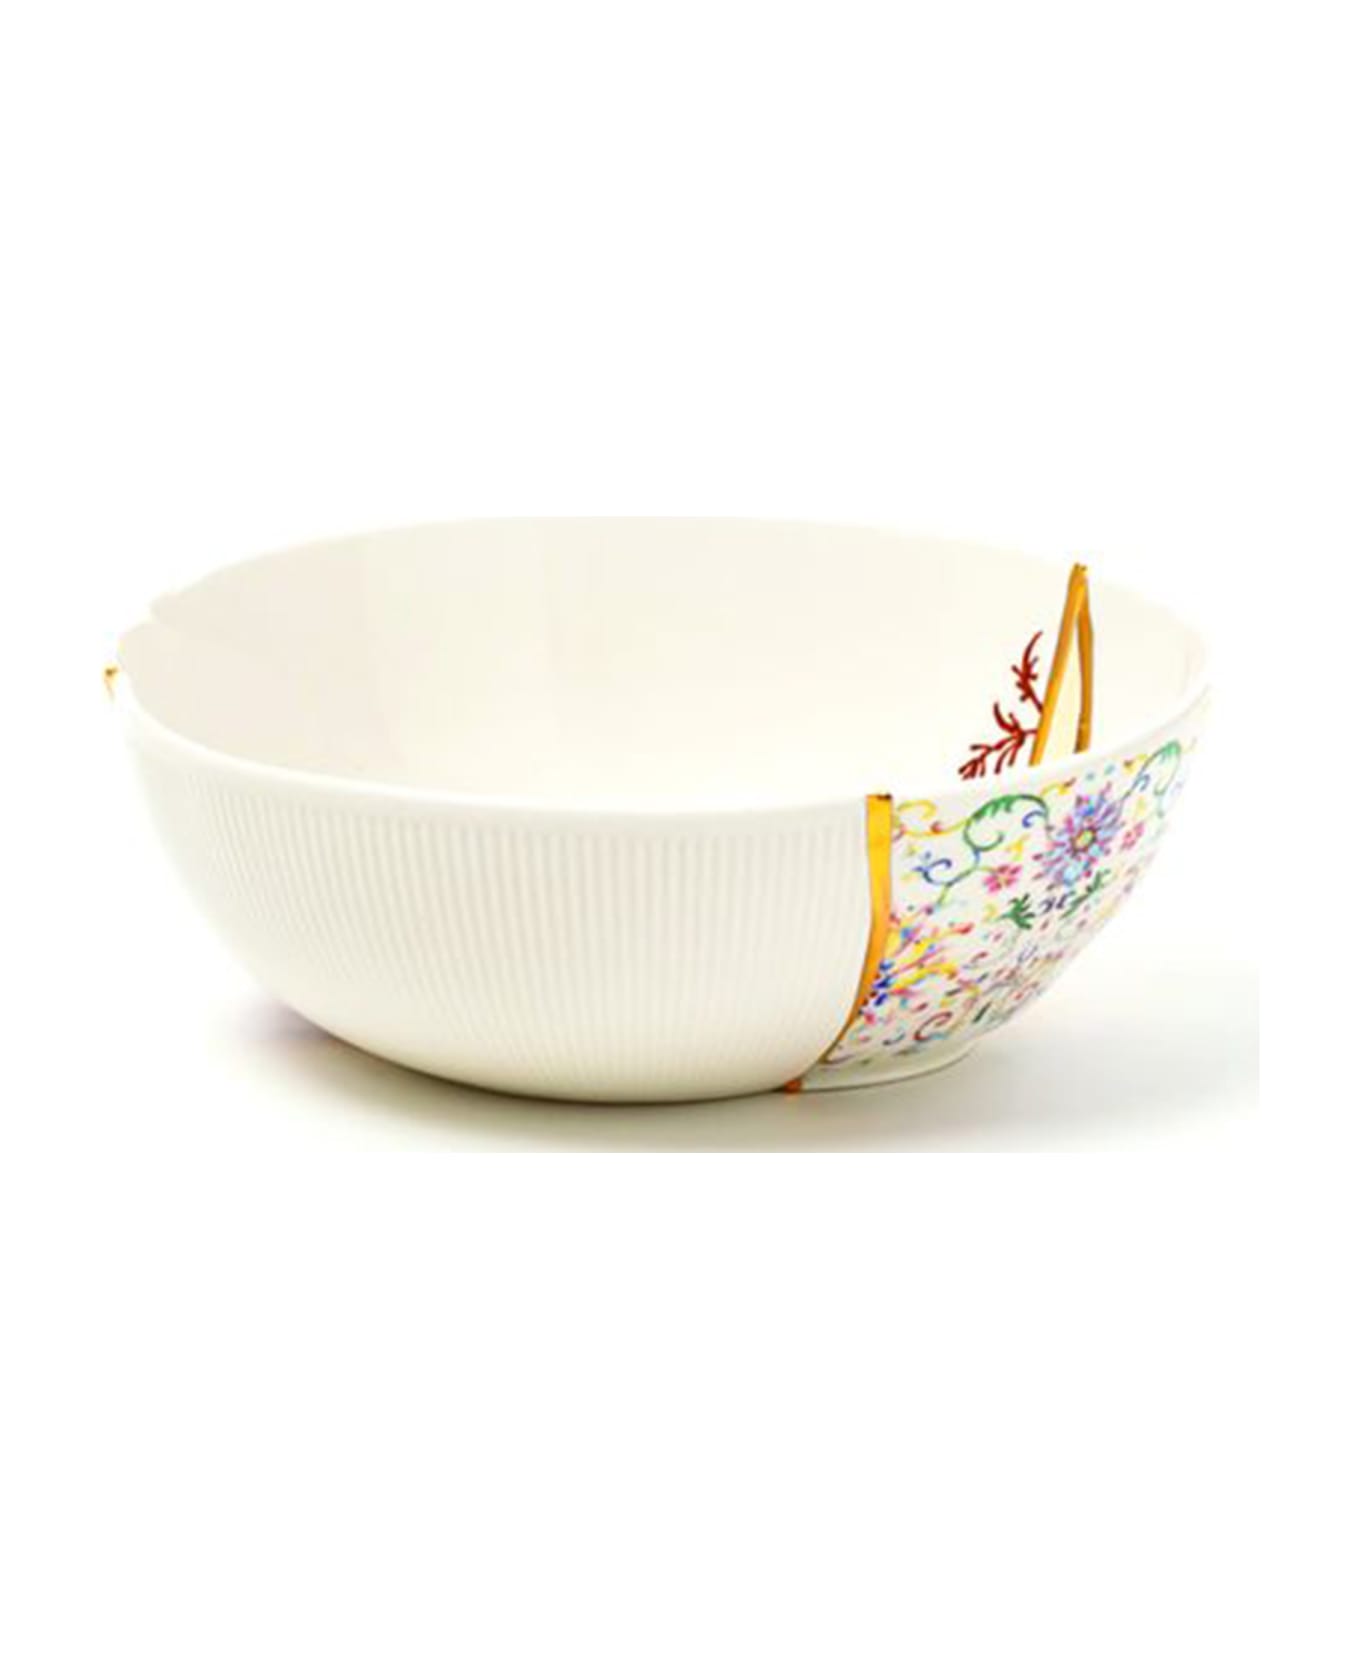 Seletti 'kintsugi' Large Bowl - Multicolor